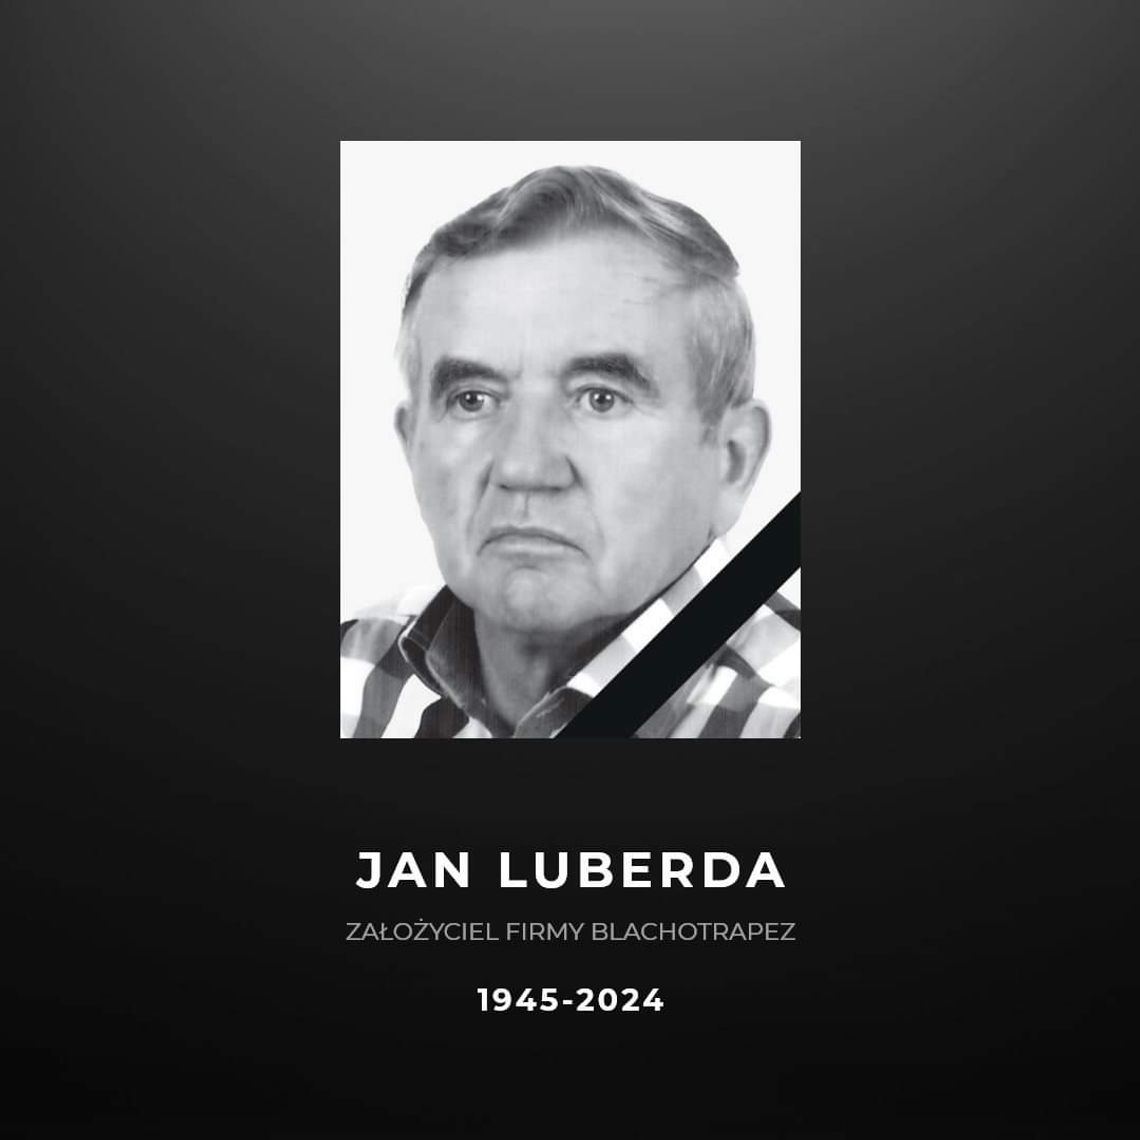 Na zdjęciu zmarły Jan Luberda, założyciel firmy Blachotrapez